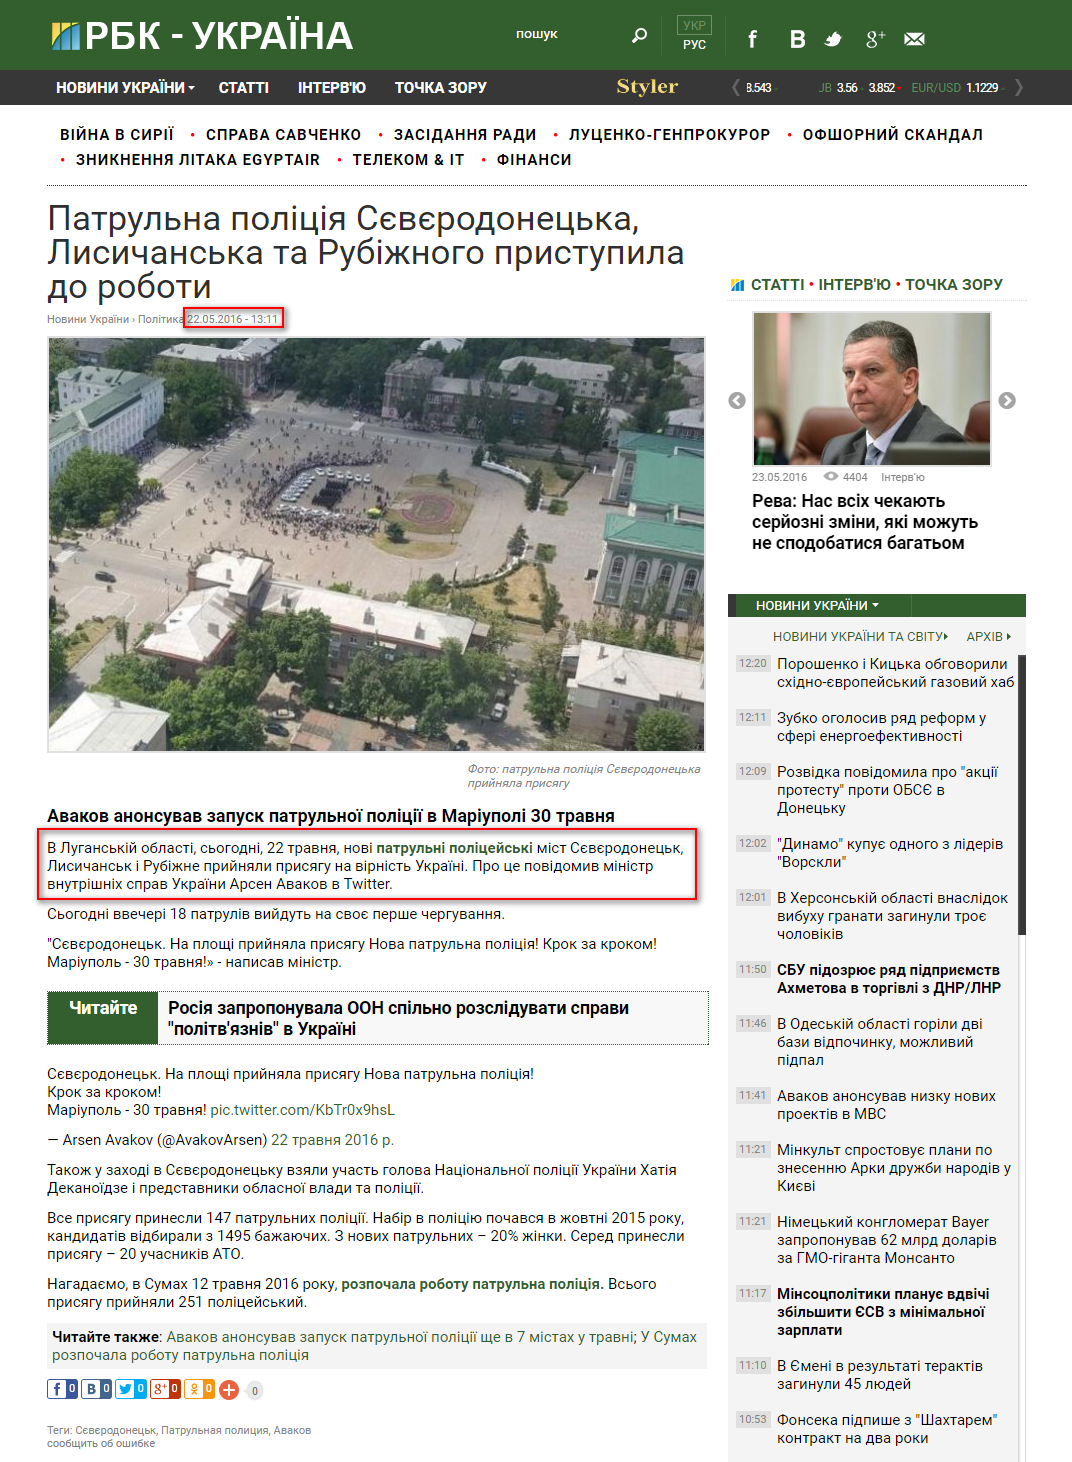 https://www.rbc.ua/ukr/news/patrulnaya-politsiya-severodonetska-lisichanska-1463911899.html